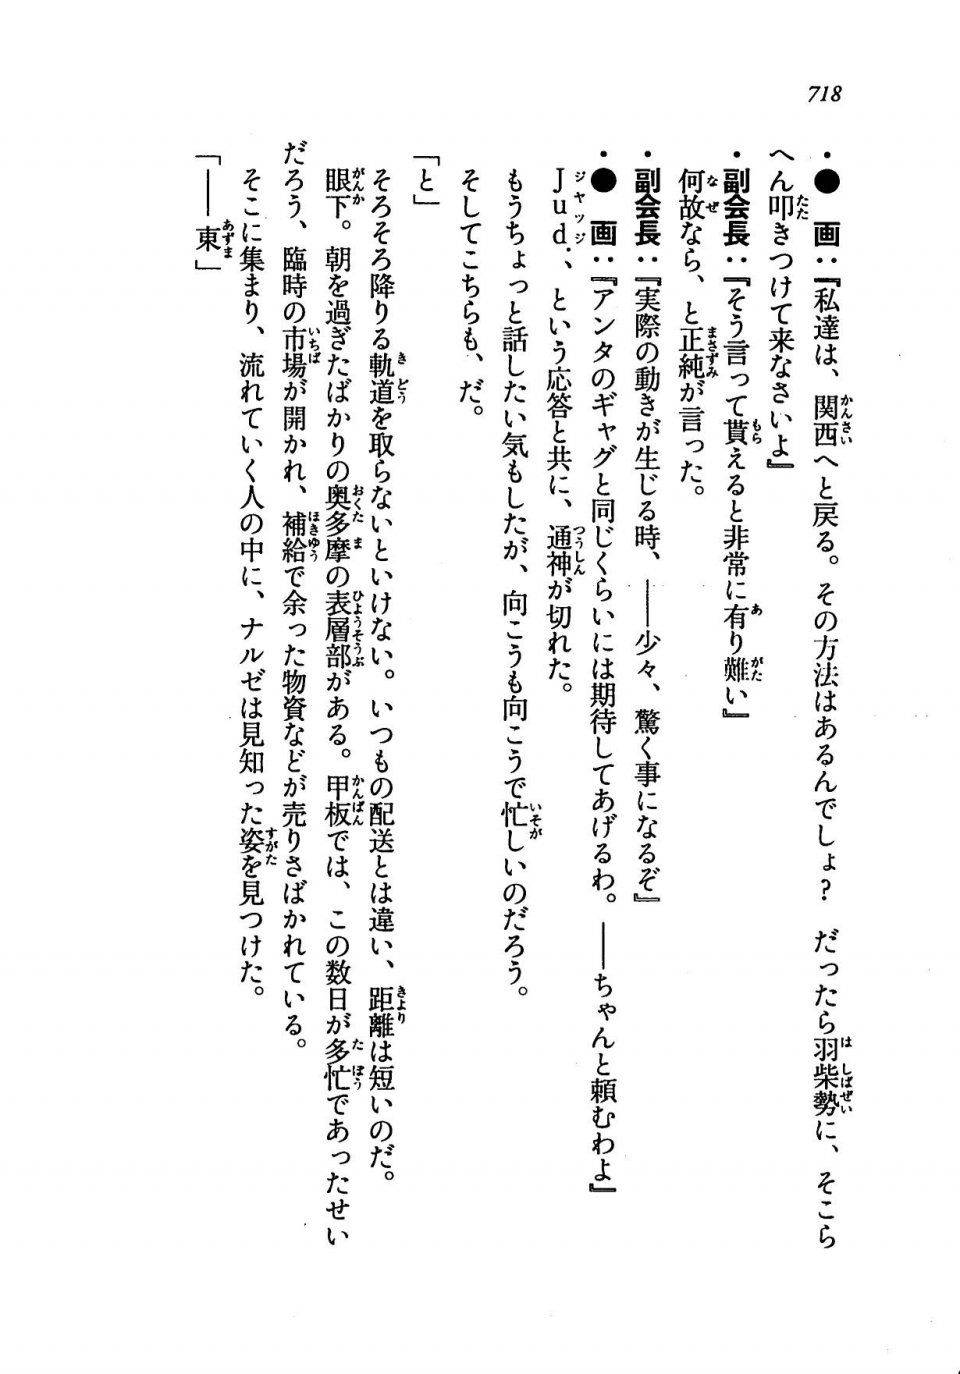 Kyoukai Senjou no Horizon LN Vol 19(8A) - Photo #718